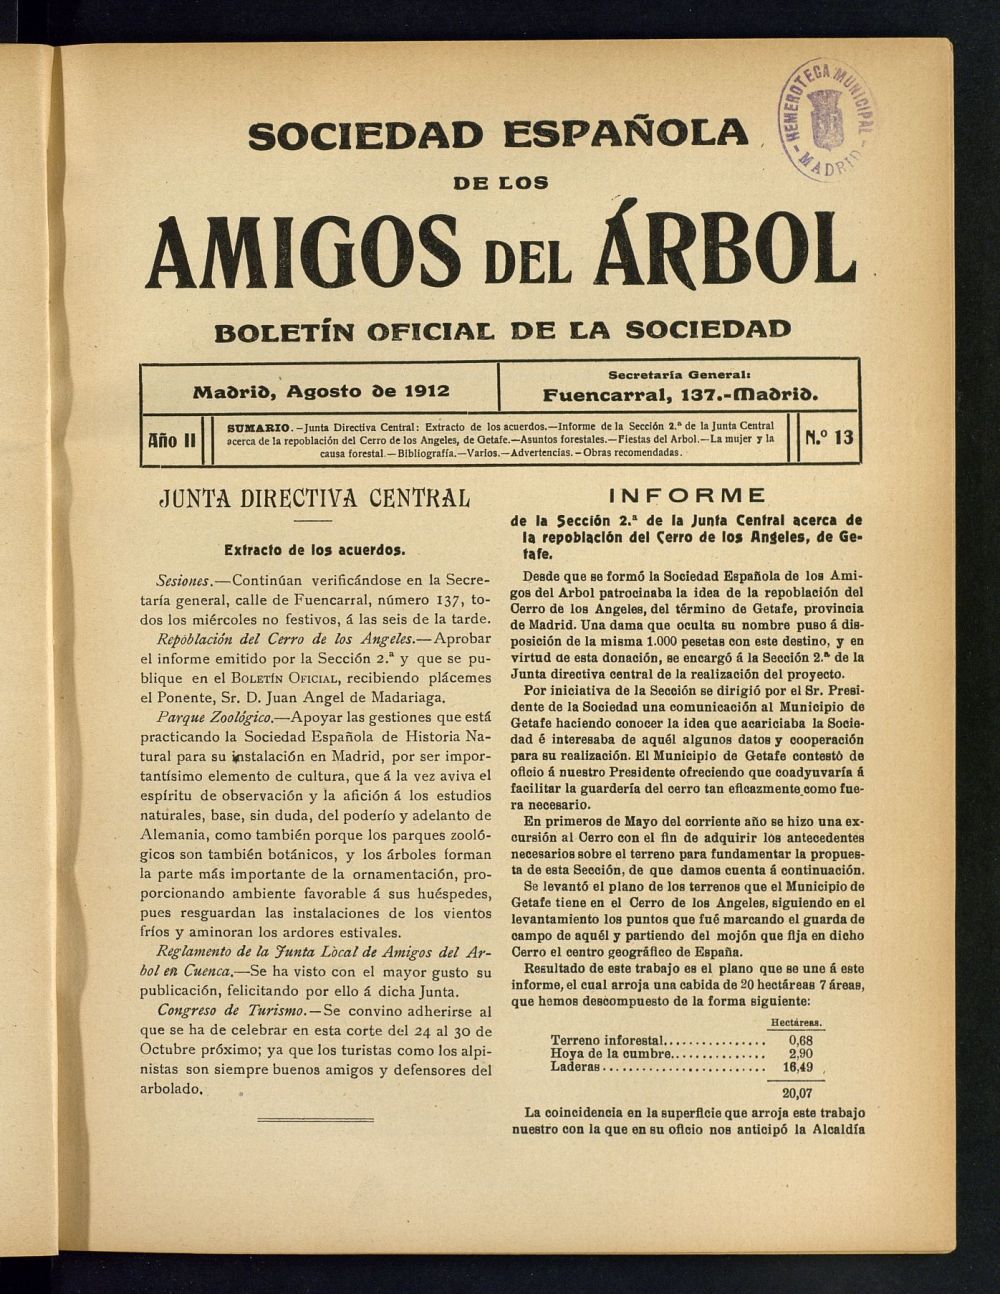 Boletn Comisin organizadora de la Sociedad Espaola de los amigos del rbol de agosto de 1912